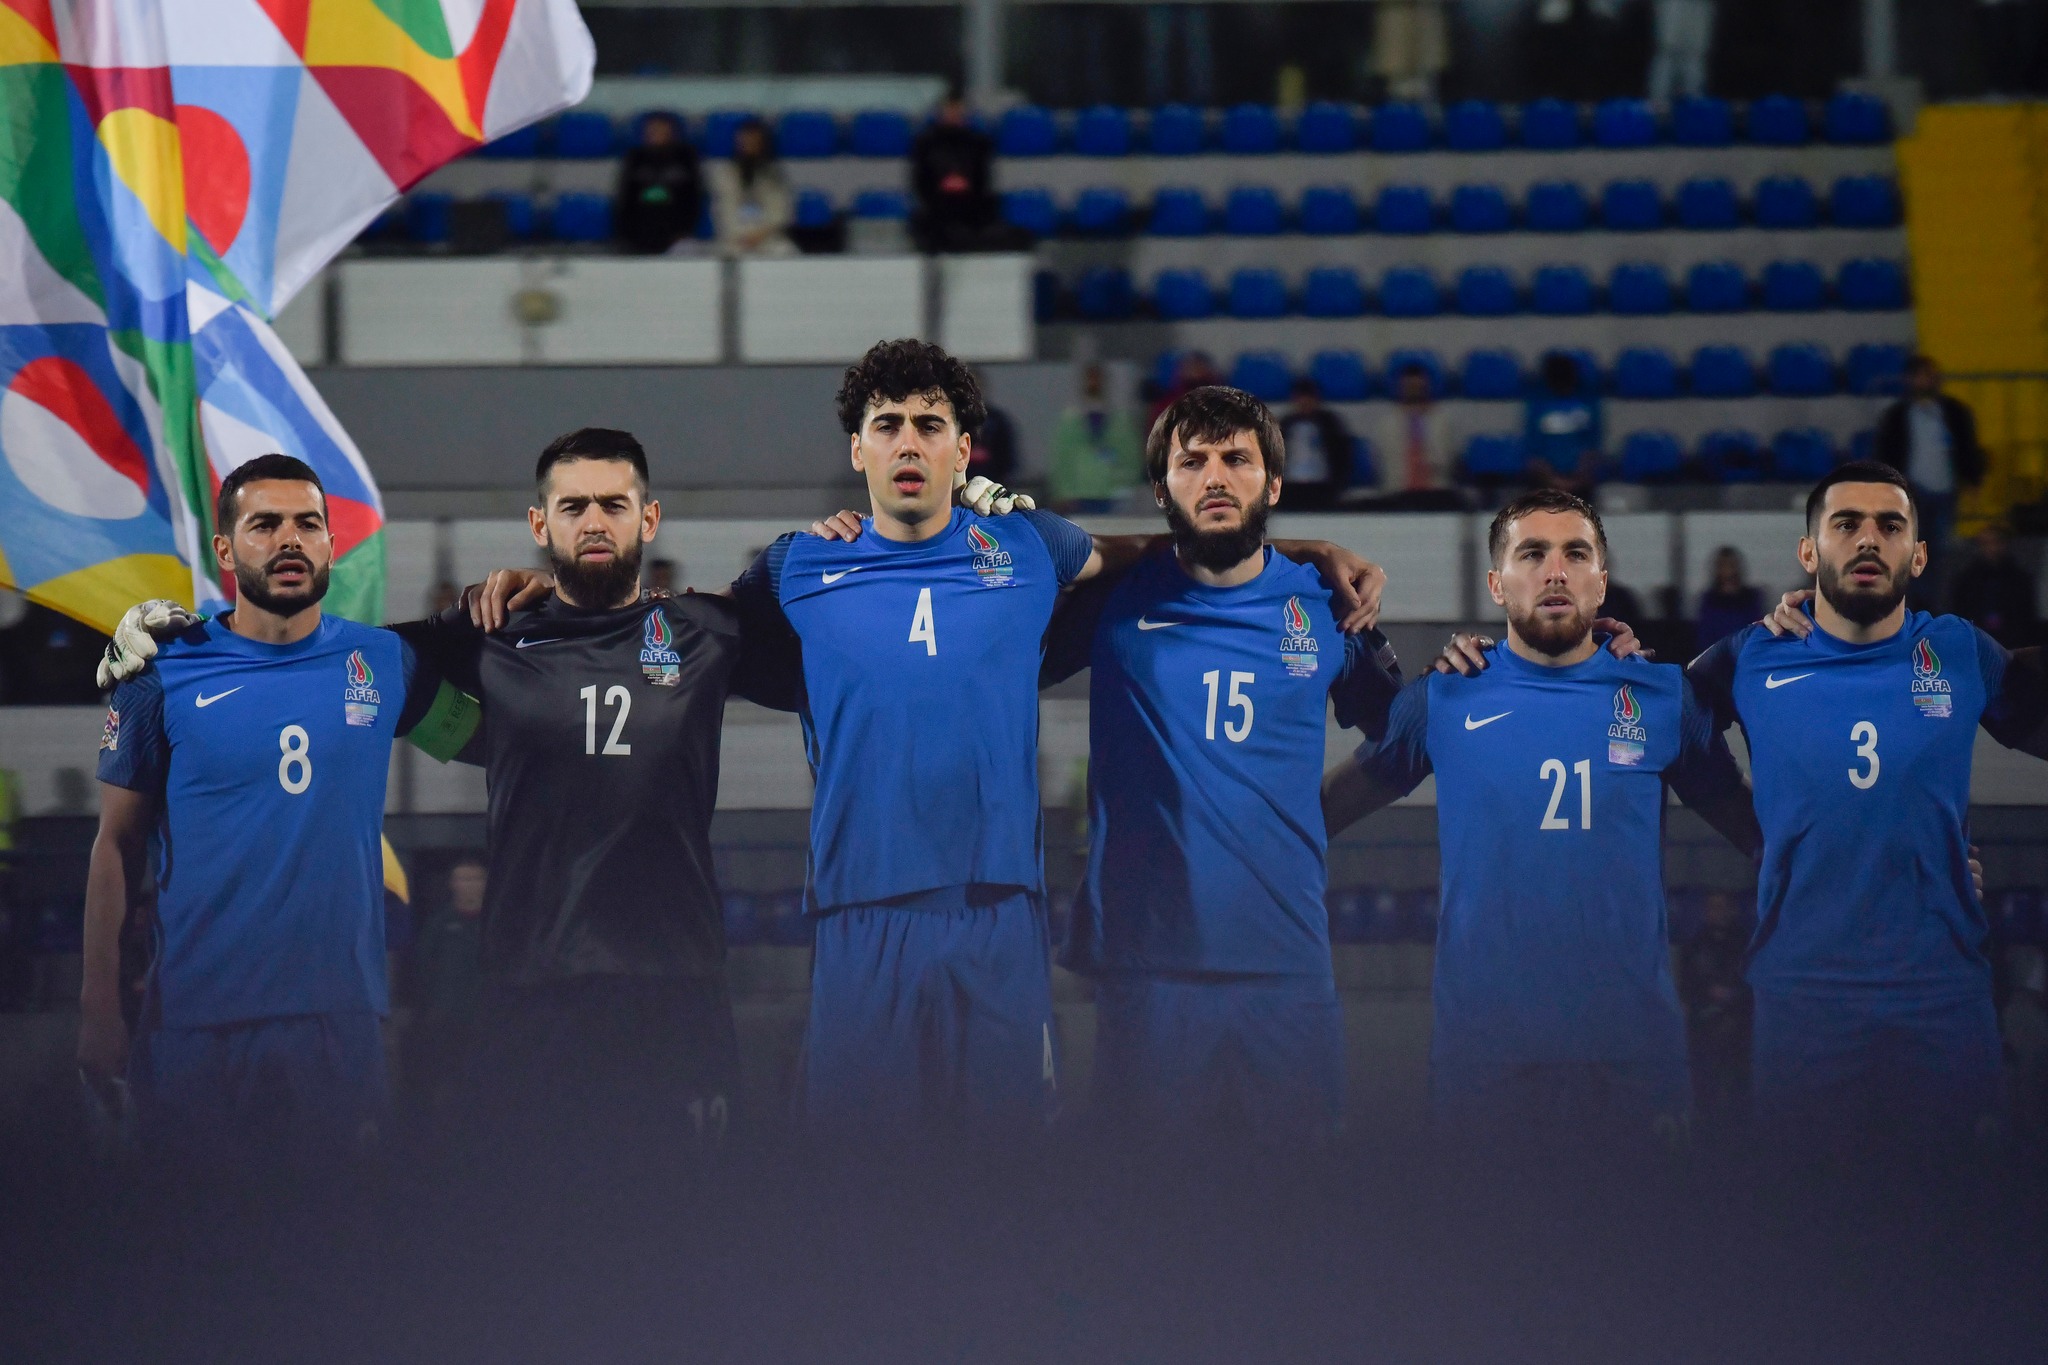 De Byazi azərbaycanlı futbolçulardan yalnız ONA GÜVƏNİR - İNANMIRSIZ?